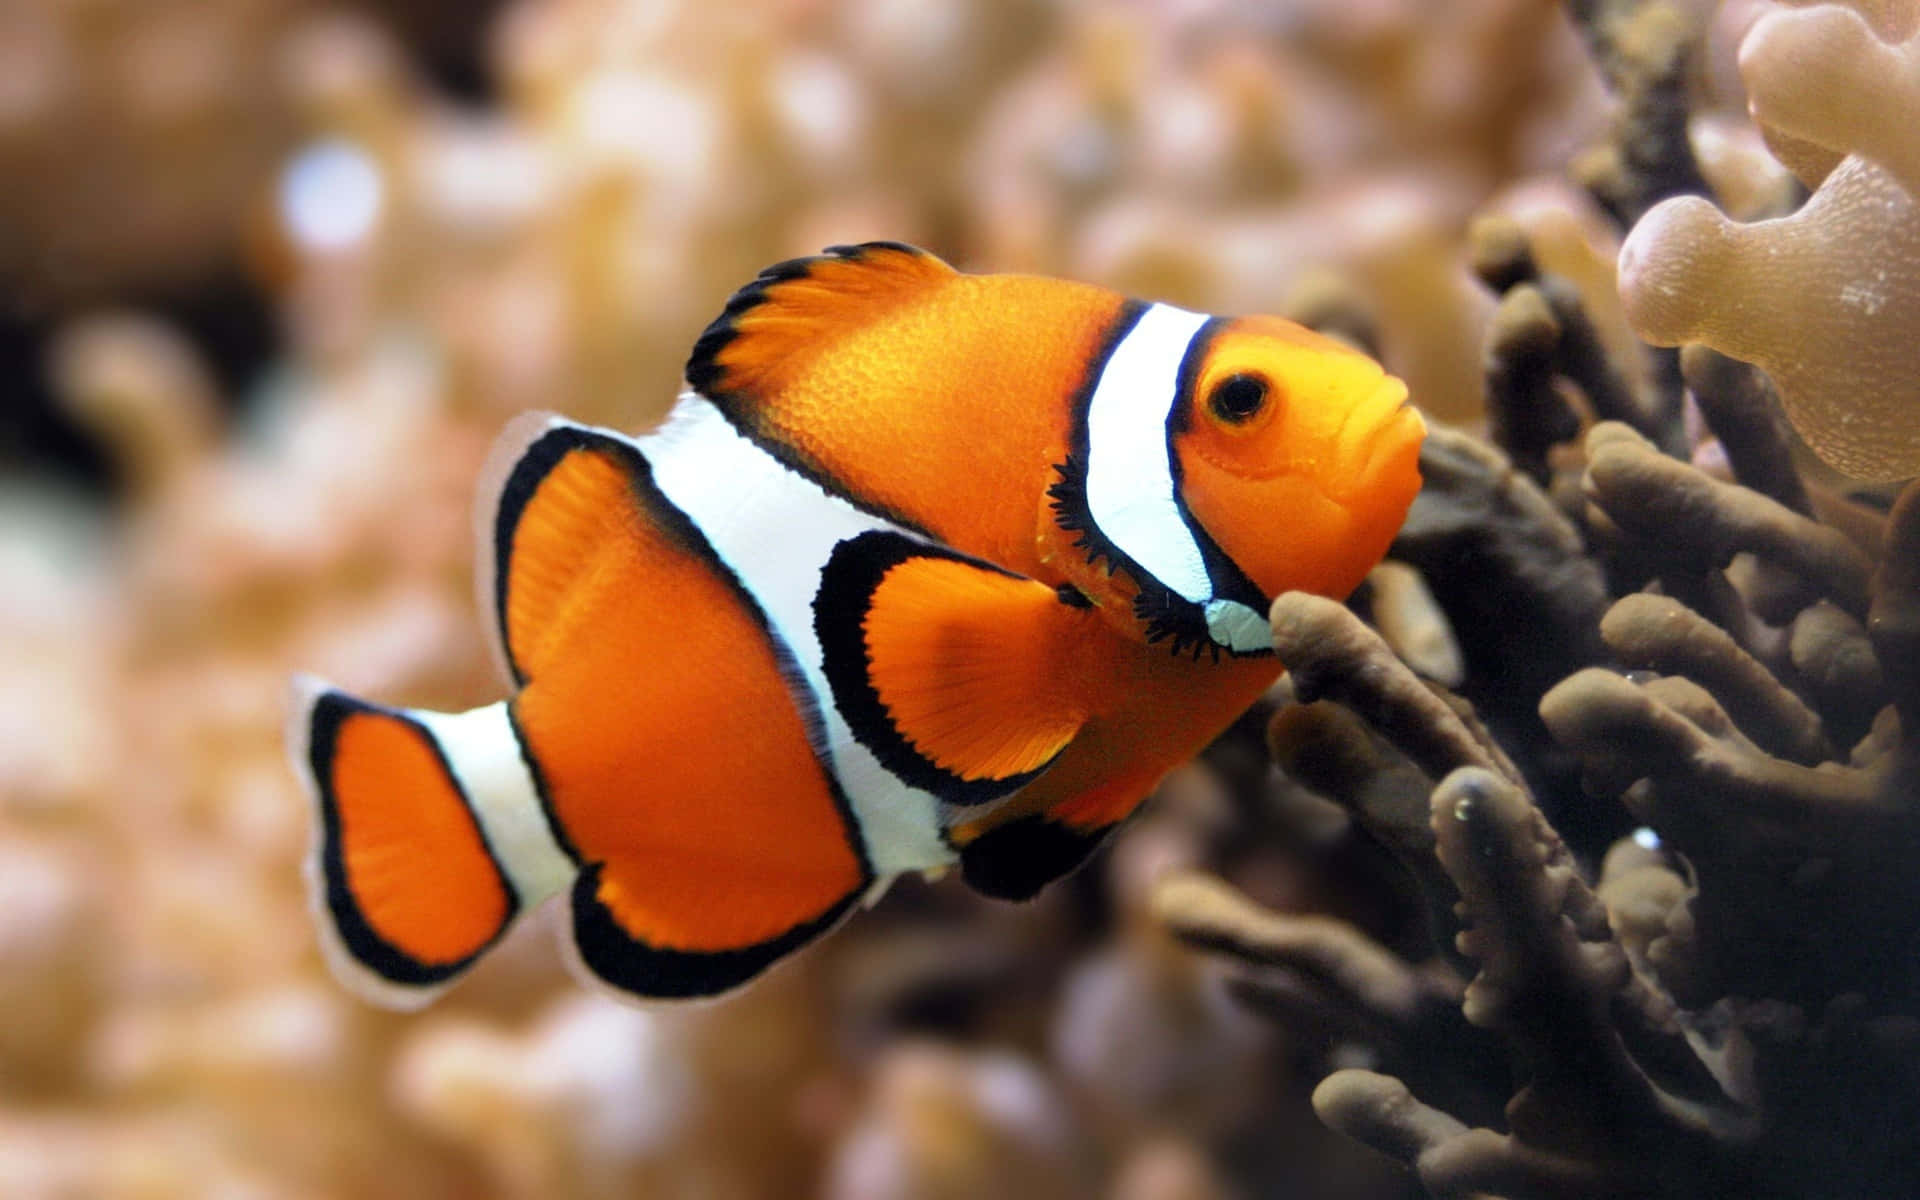 Unoscatto Ravvicinato Di Un Pesce Arancione E Giallo Vibrante In Acqua Cristallina.